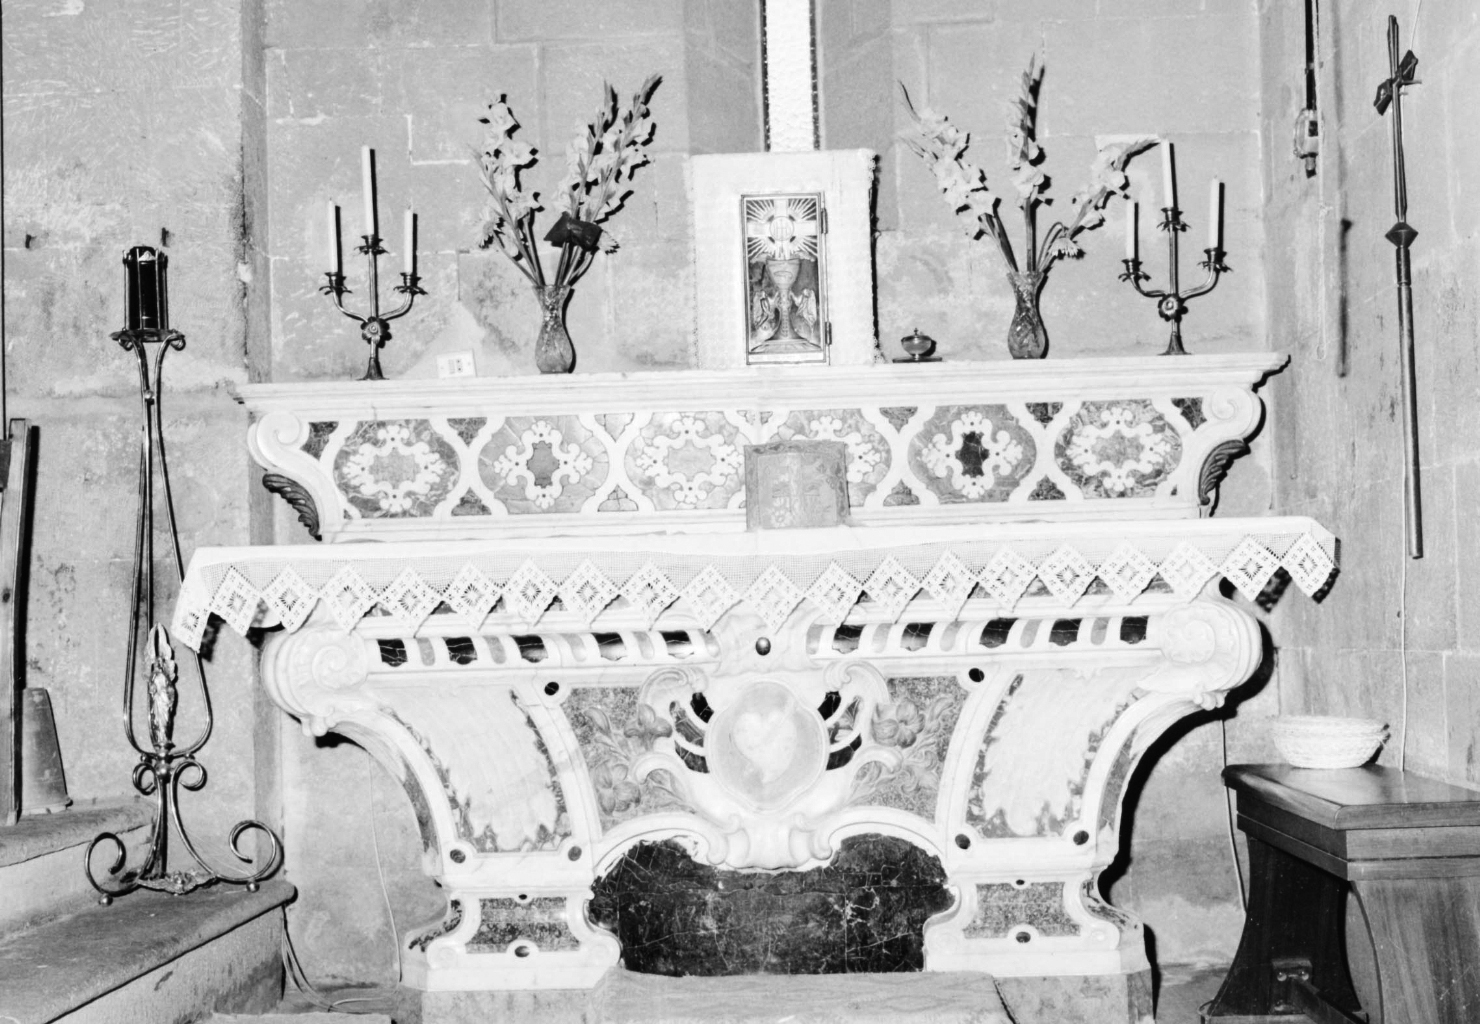 Sacro cuore di gesù (altare - a mensa)